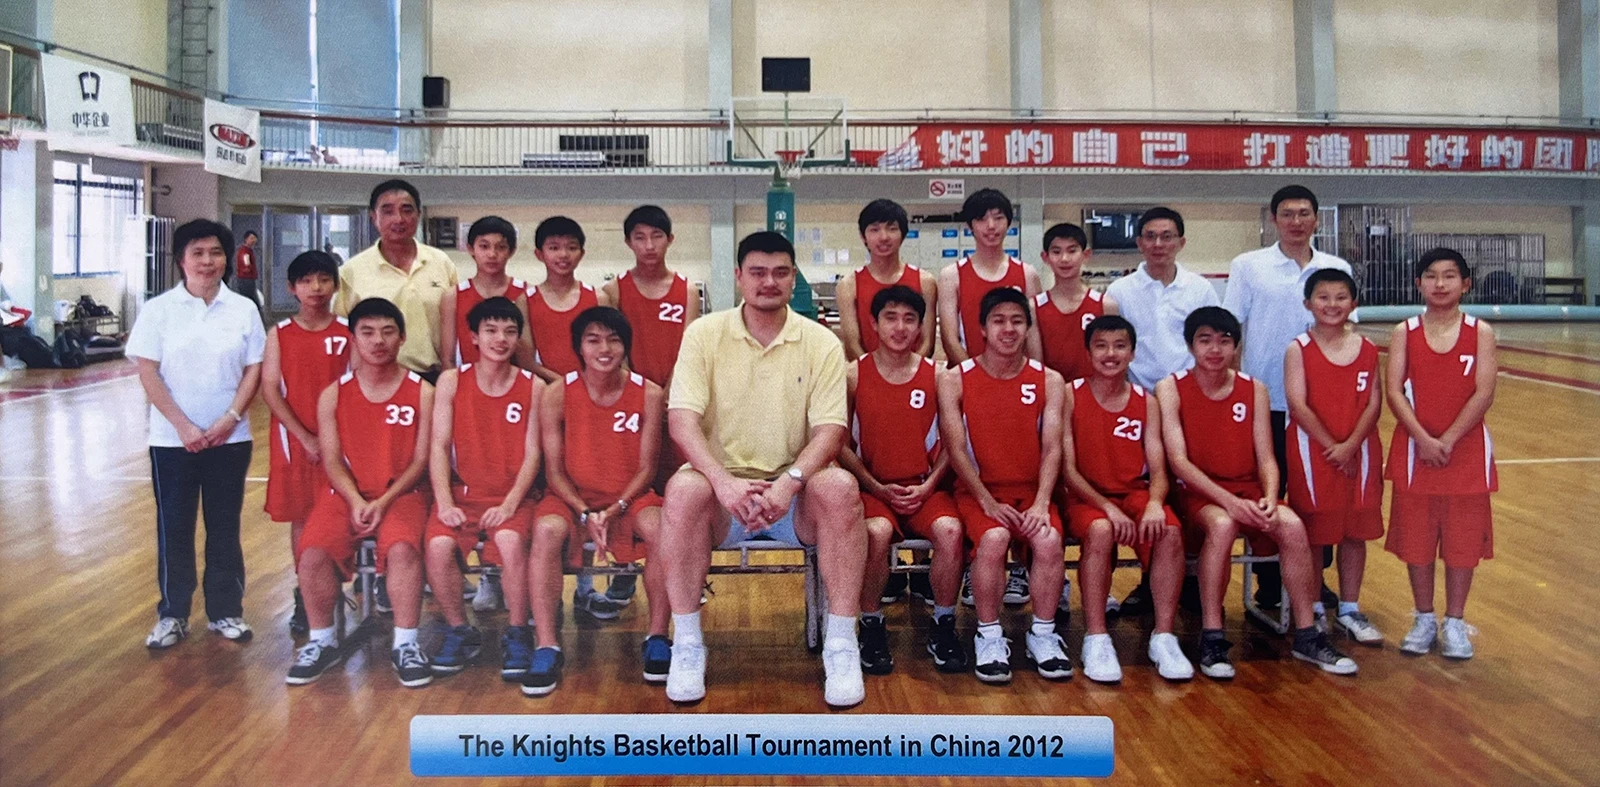 2012年Knights Basketball 中国之行与篮球巨星姚明合影